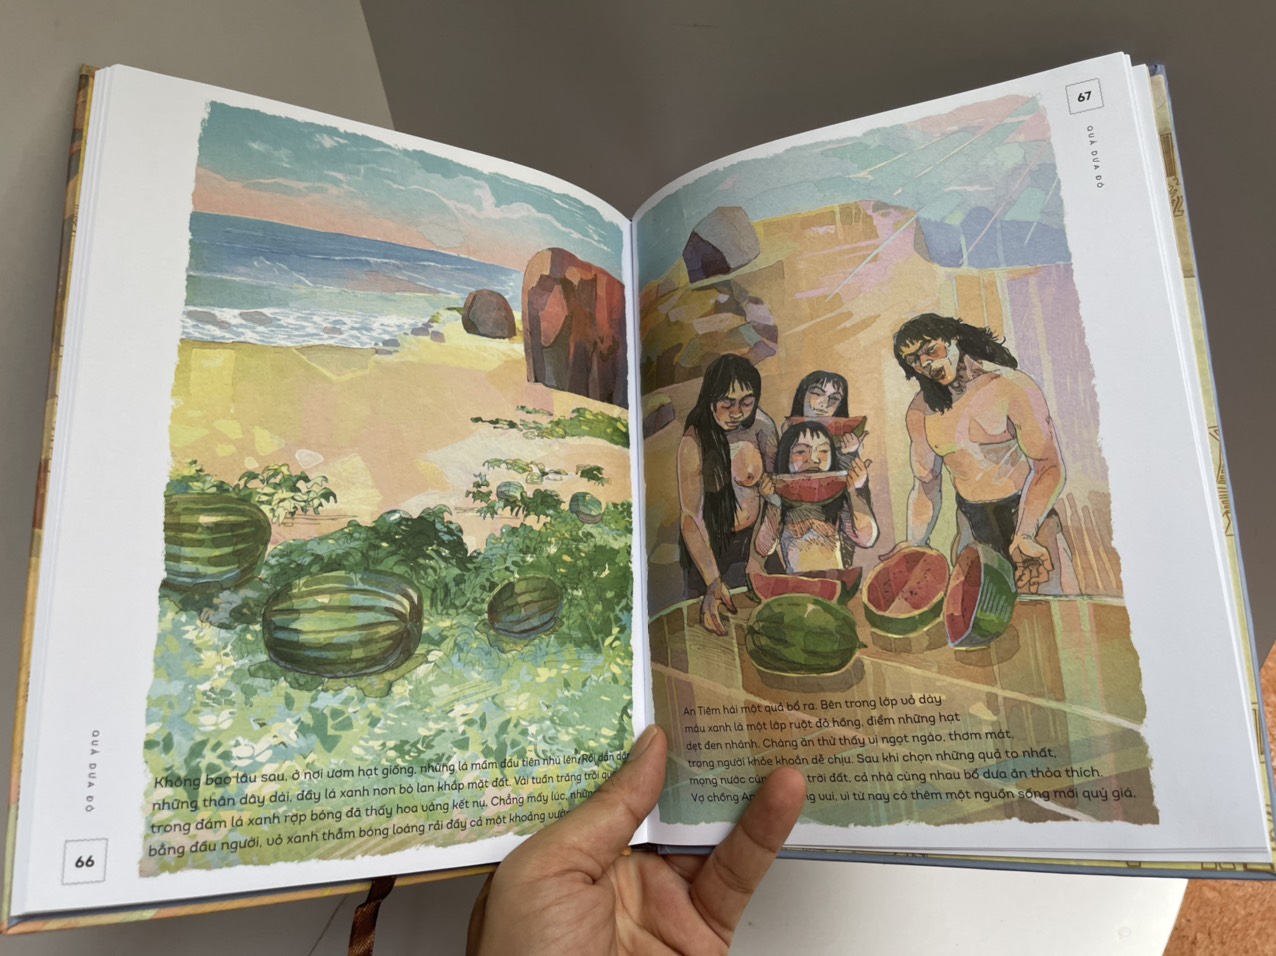 [Bộ LỊCH SỬ VIỆT NAM BẰNG TRANH] - BÁNH CHƯNG BÁNH GIẦY – Tập thứ 20 trong bộ sách quan trọng cho tuổi thơ đã ra mắt – NXB Trẻ